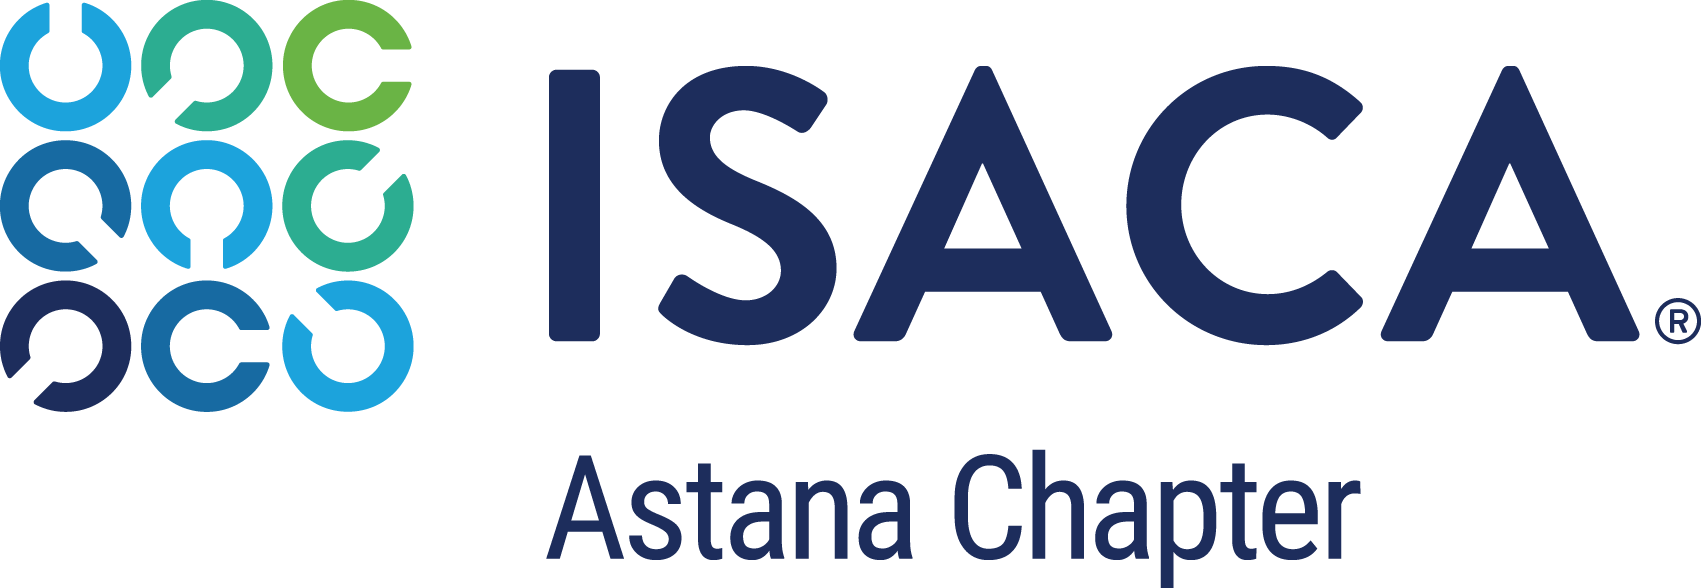 ISACA Astana Chapter